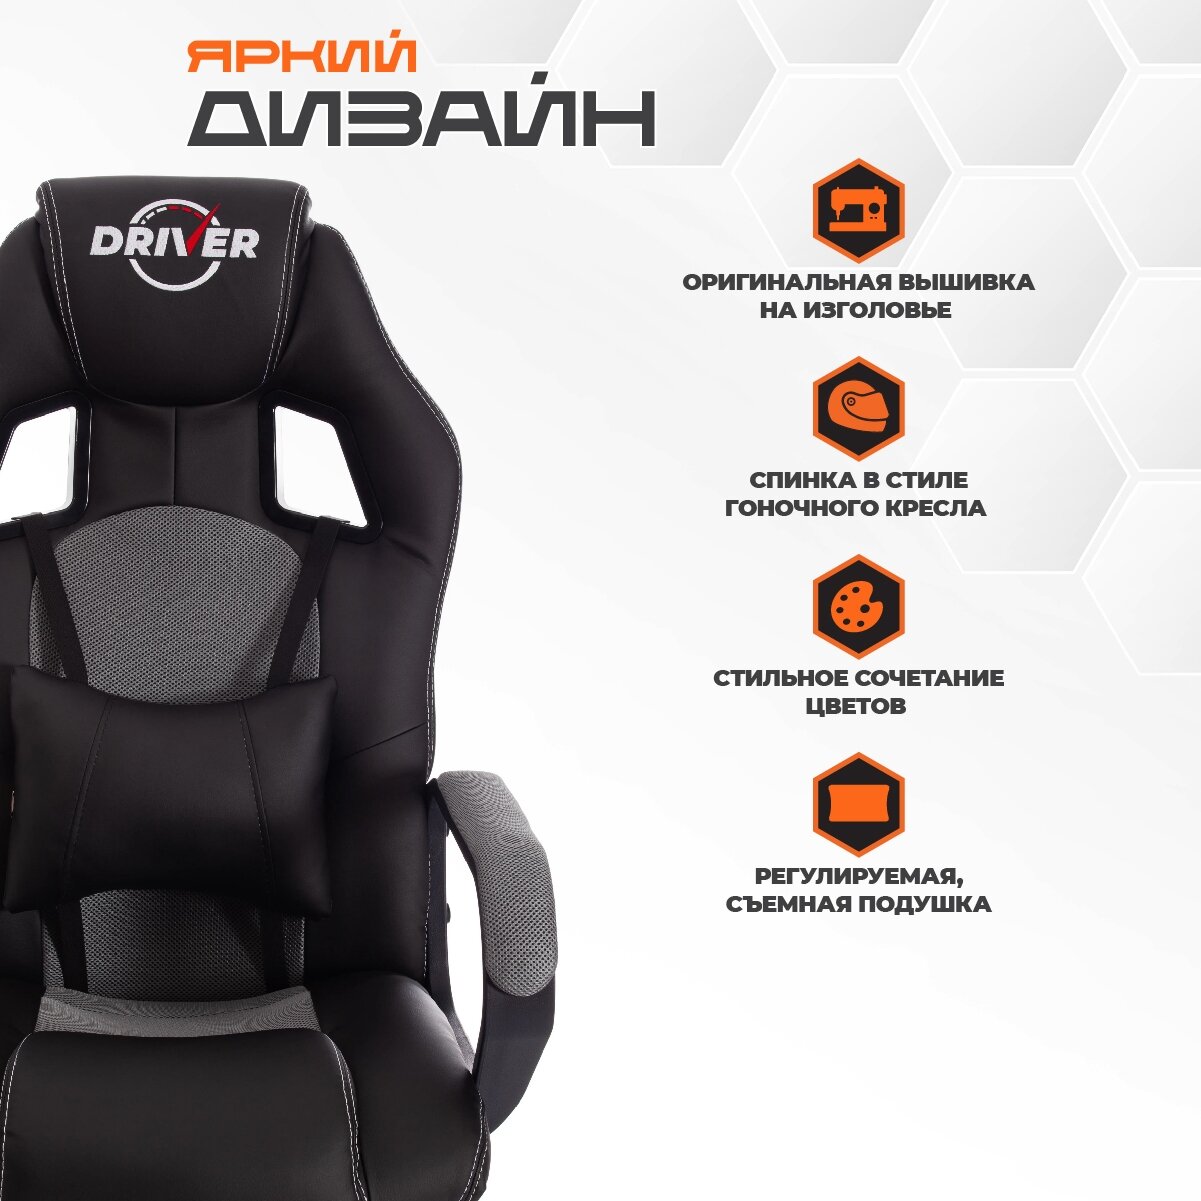 Компьютерное кресло TetChair Driver 22 игровое, обивка: искусственная кожа/текстиль, цвет: черный/серый, 36-6/TW-12 - фотография № 2